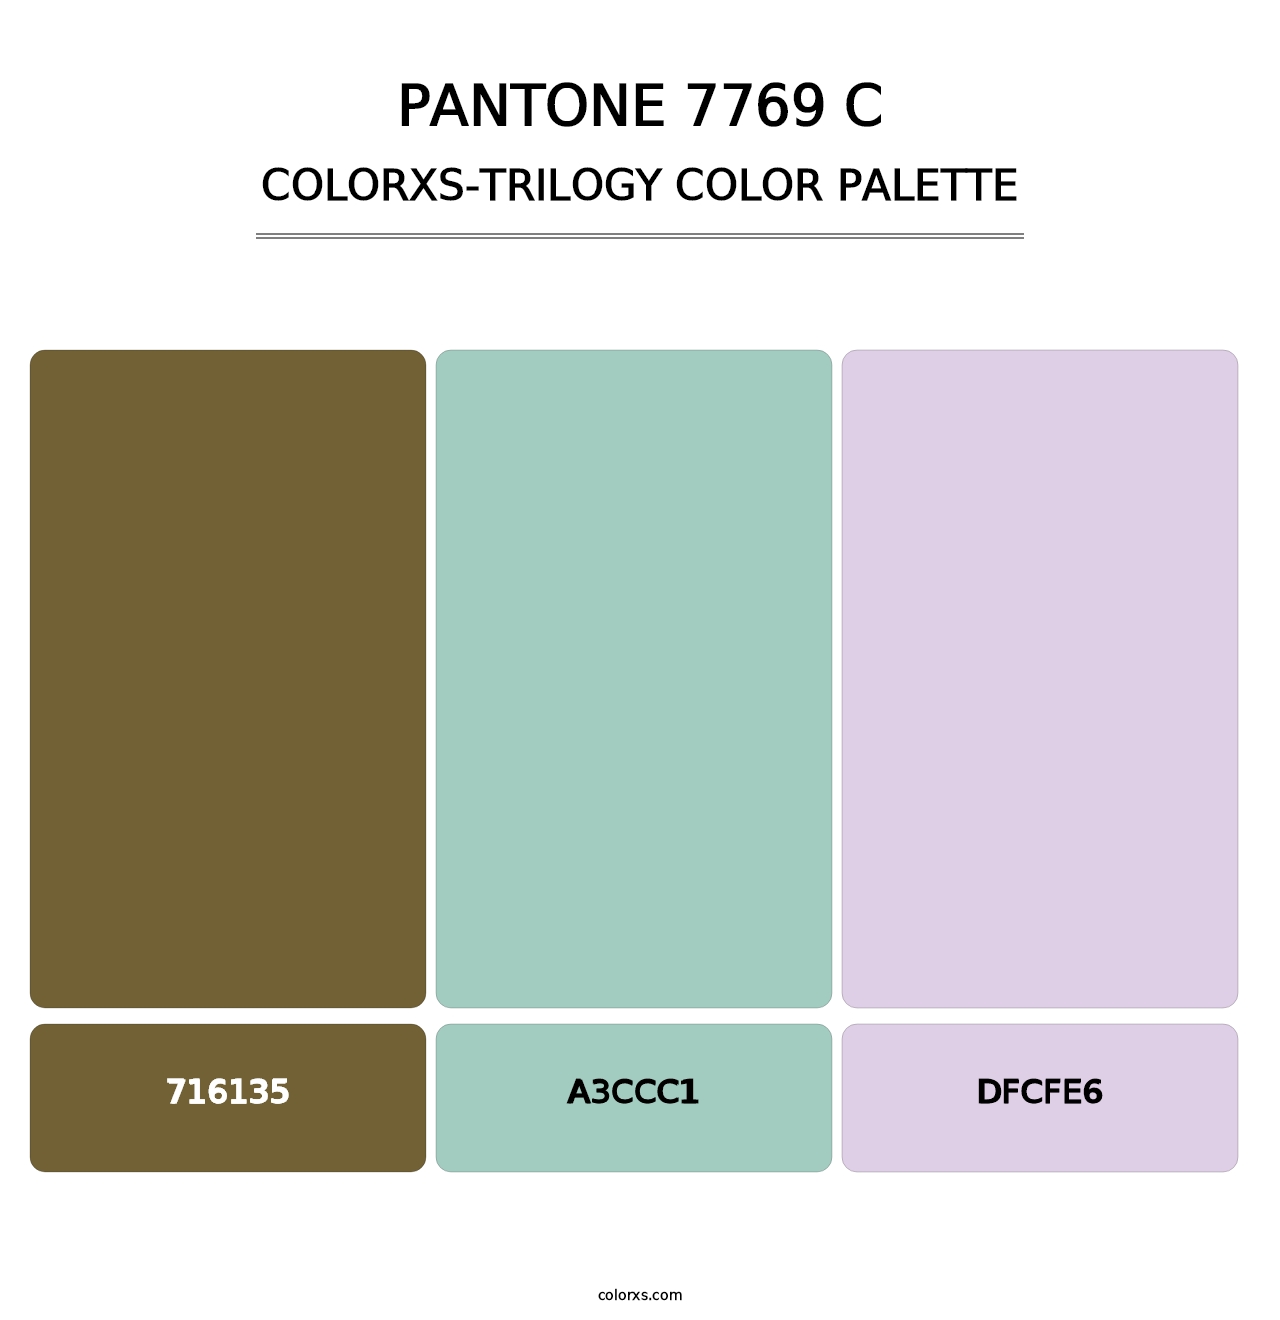 PANTONE 7769 C - Colorxs Trilogy Palette